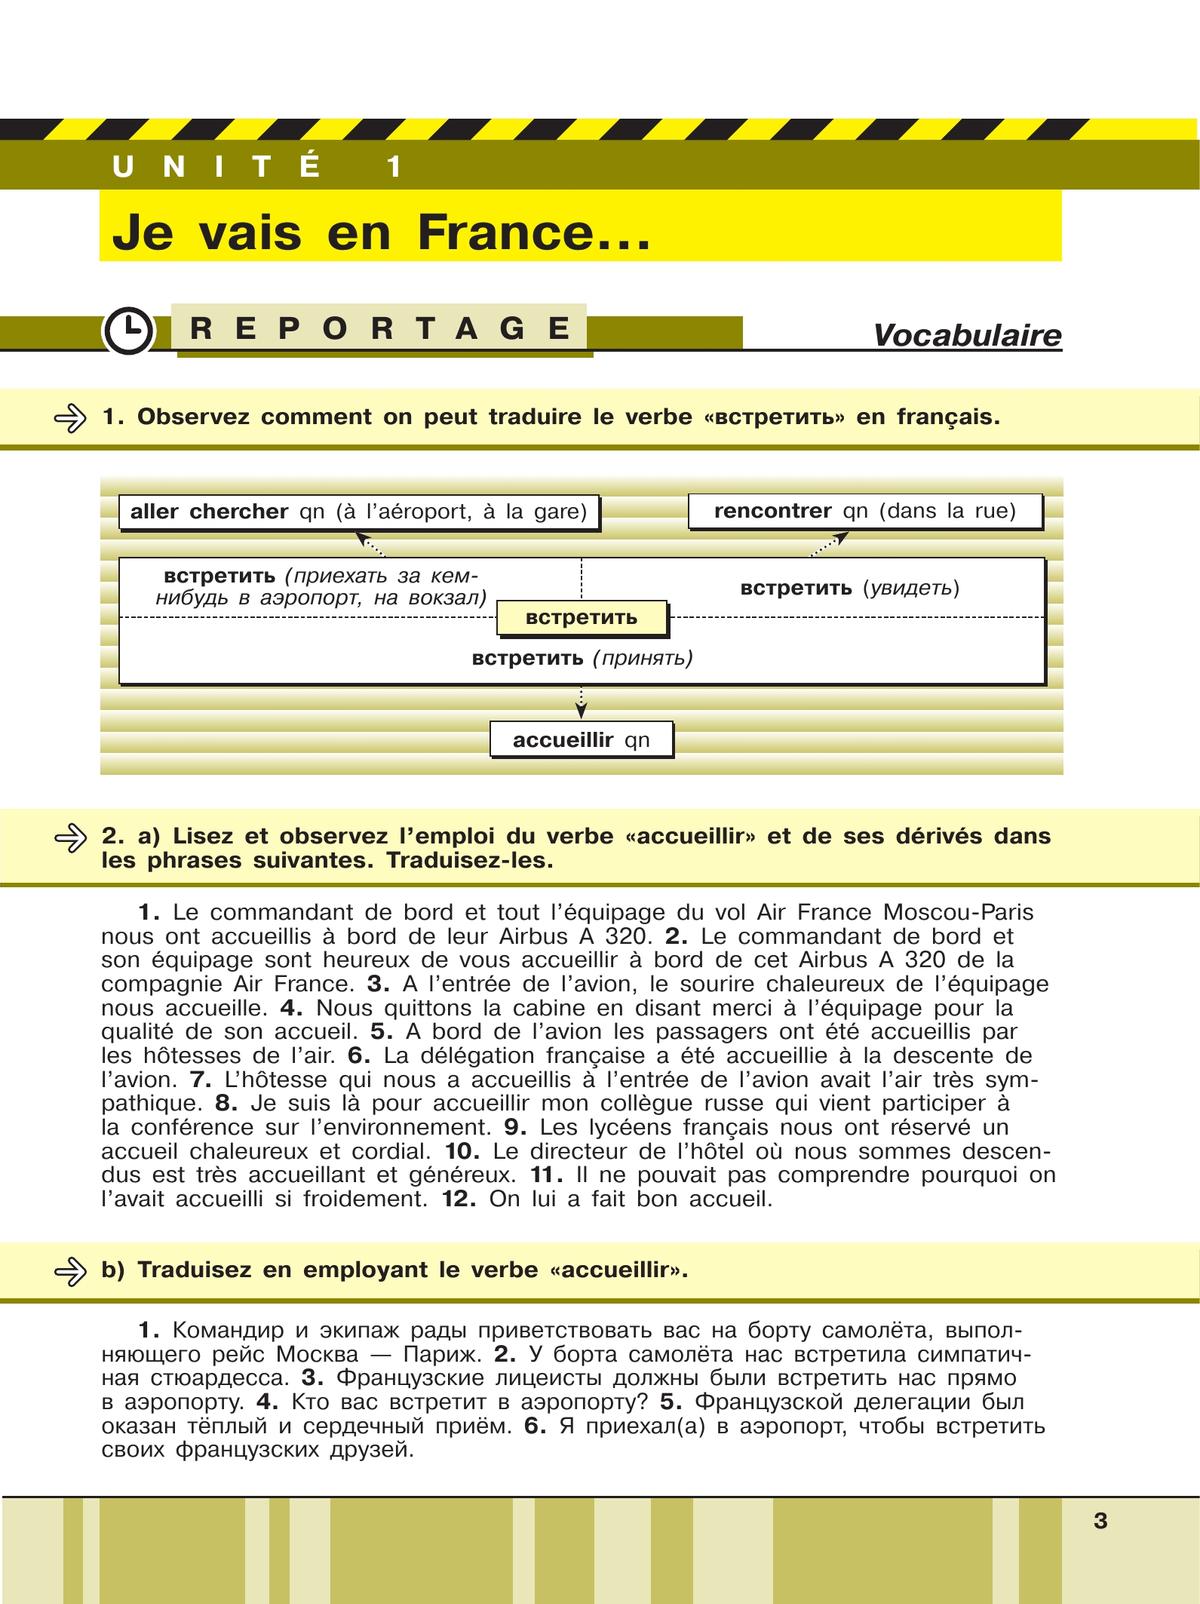 Французский язык. Второй иностранный язык. Сборник упражнений. 9 класс 4